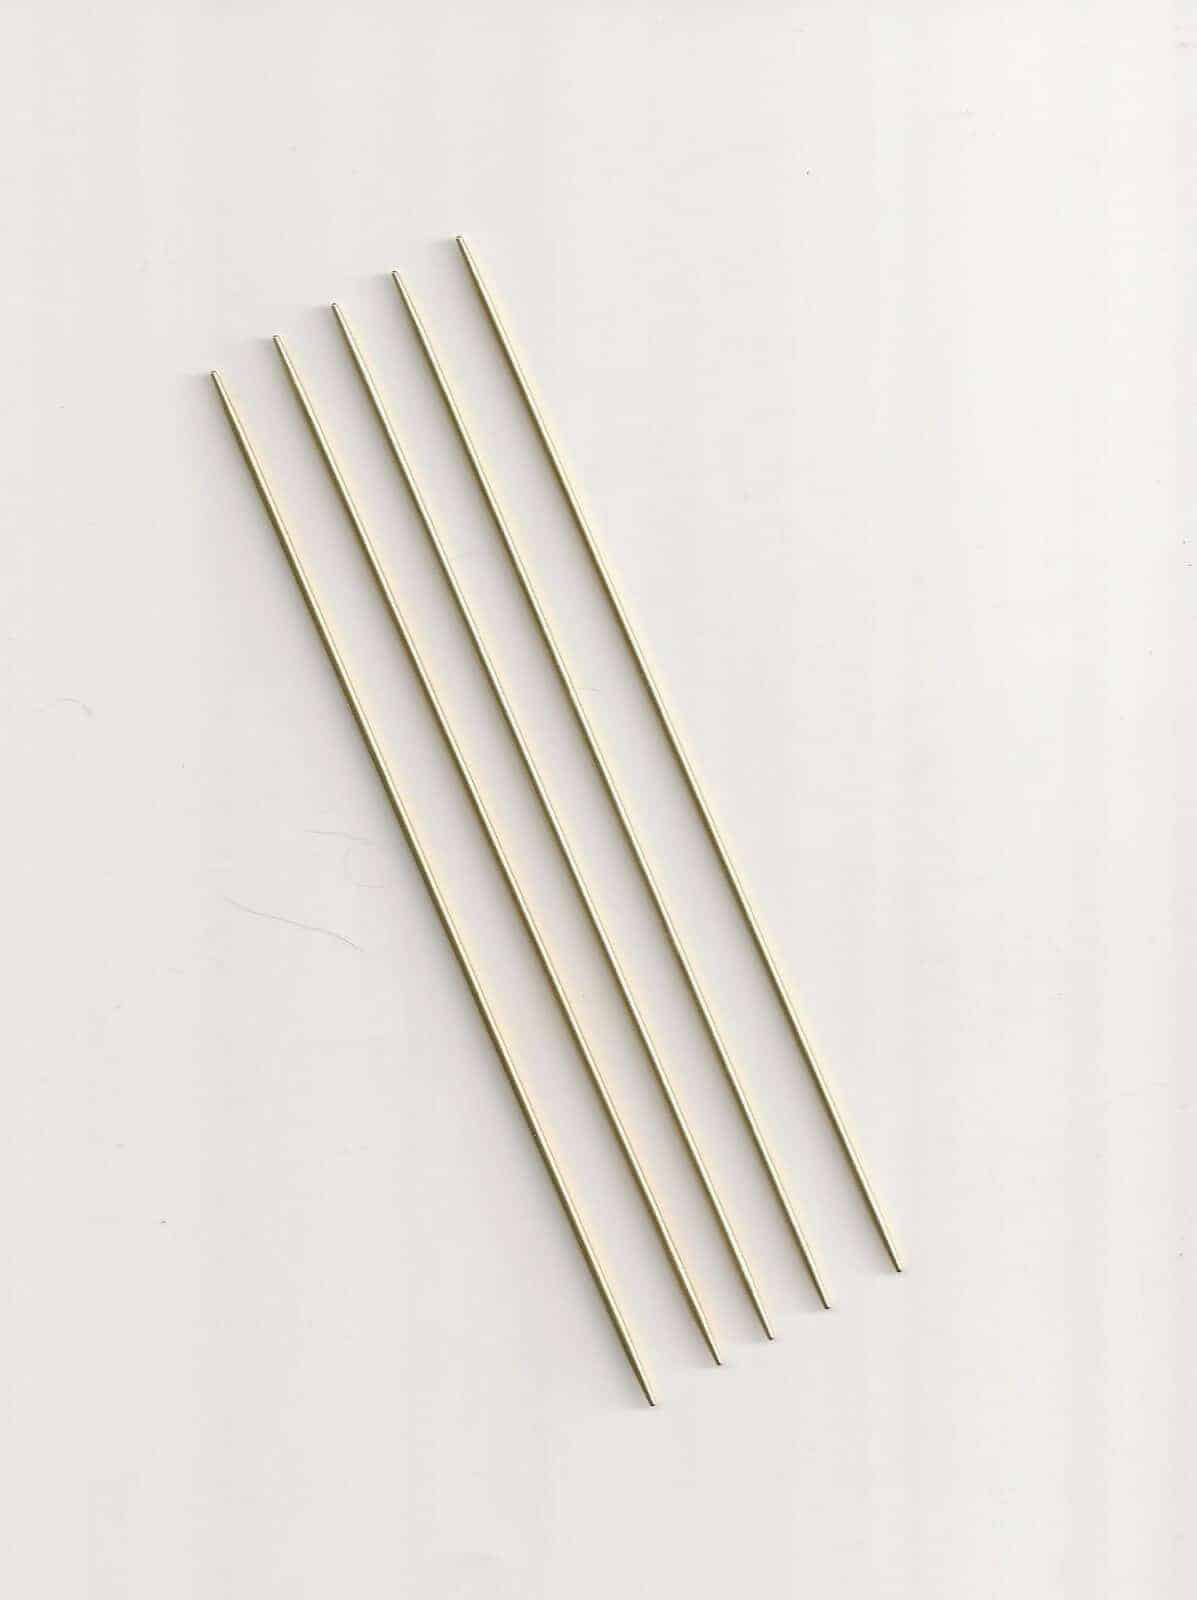 Boye 7 Double Point Aluminum Knitting Needle Set